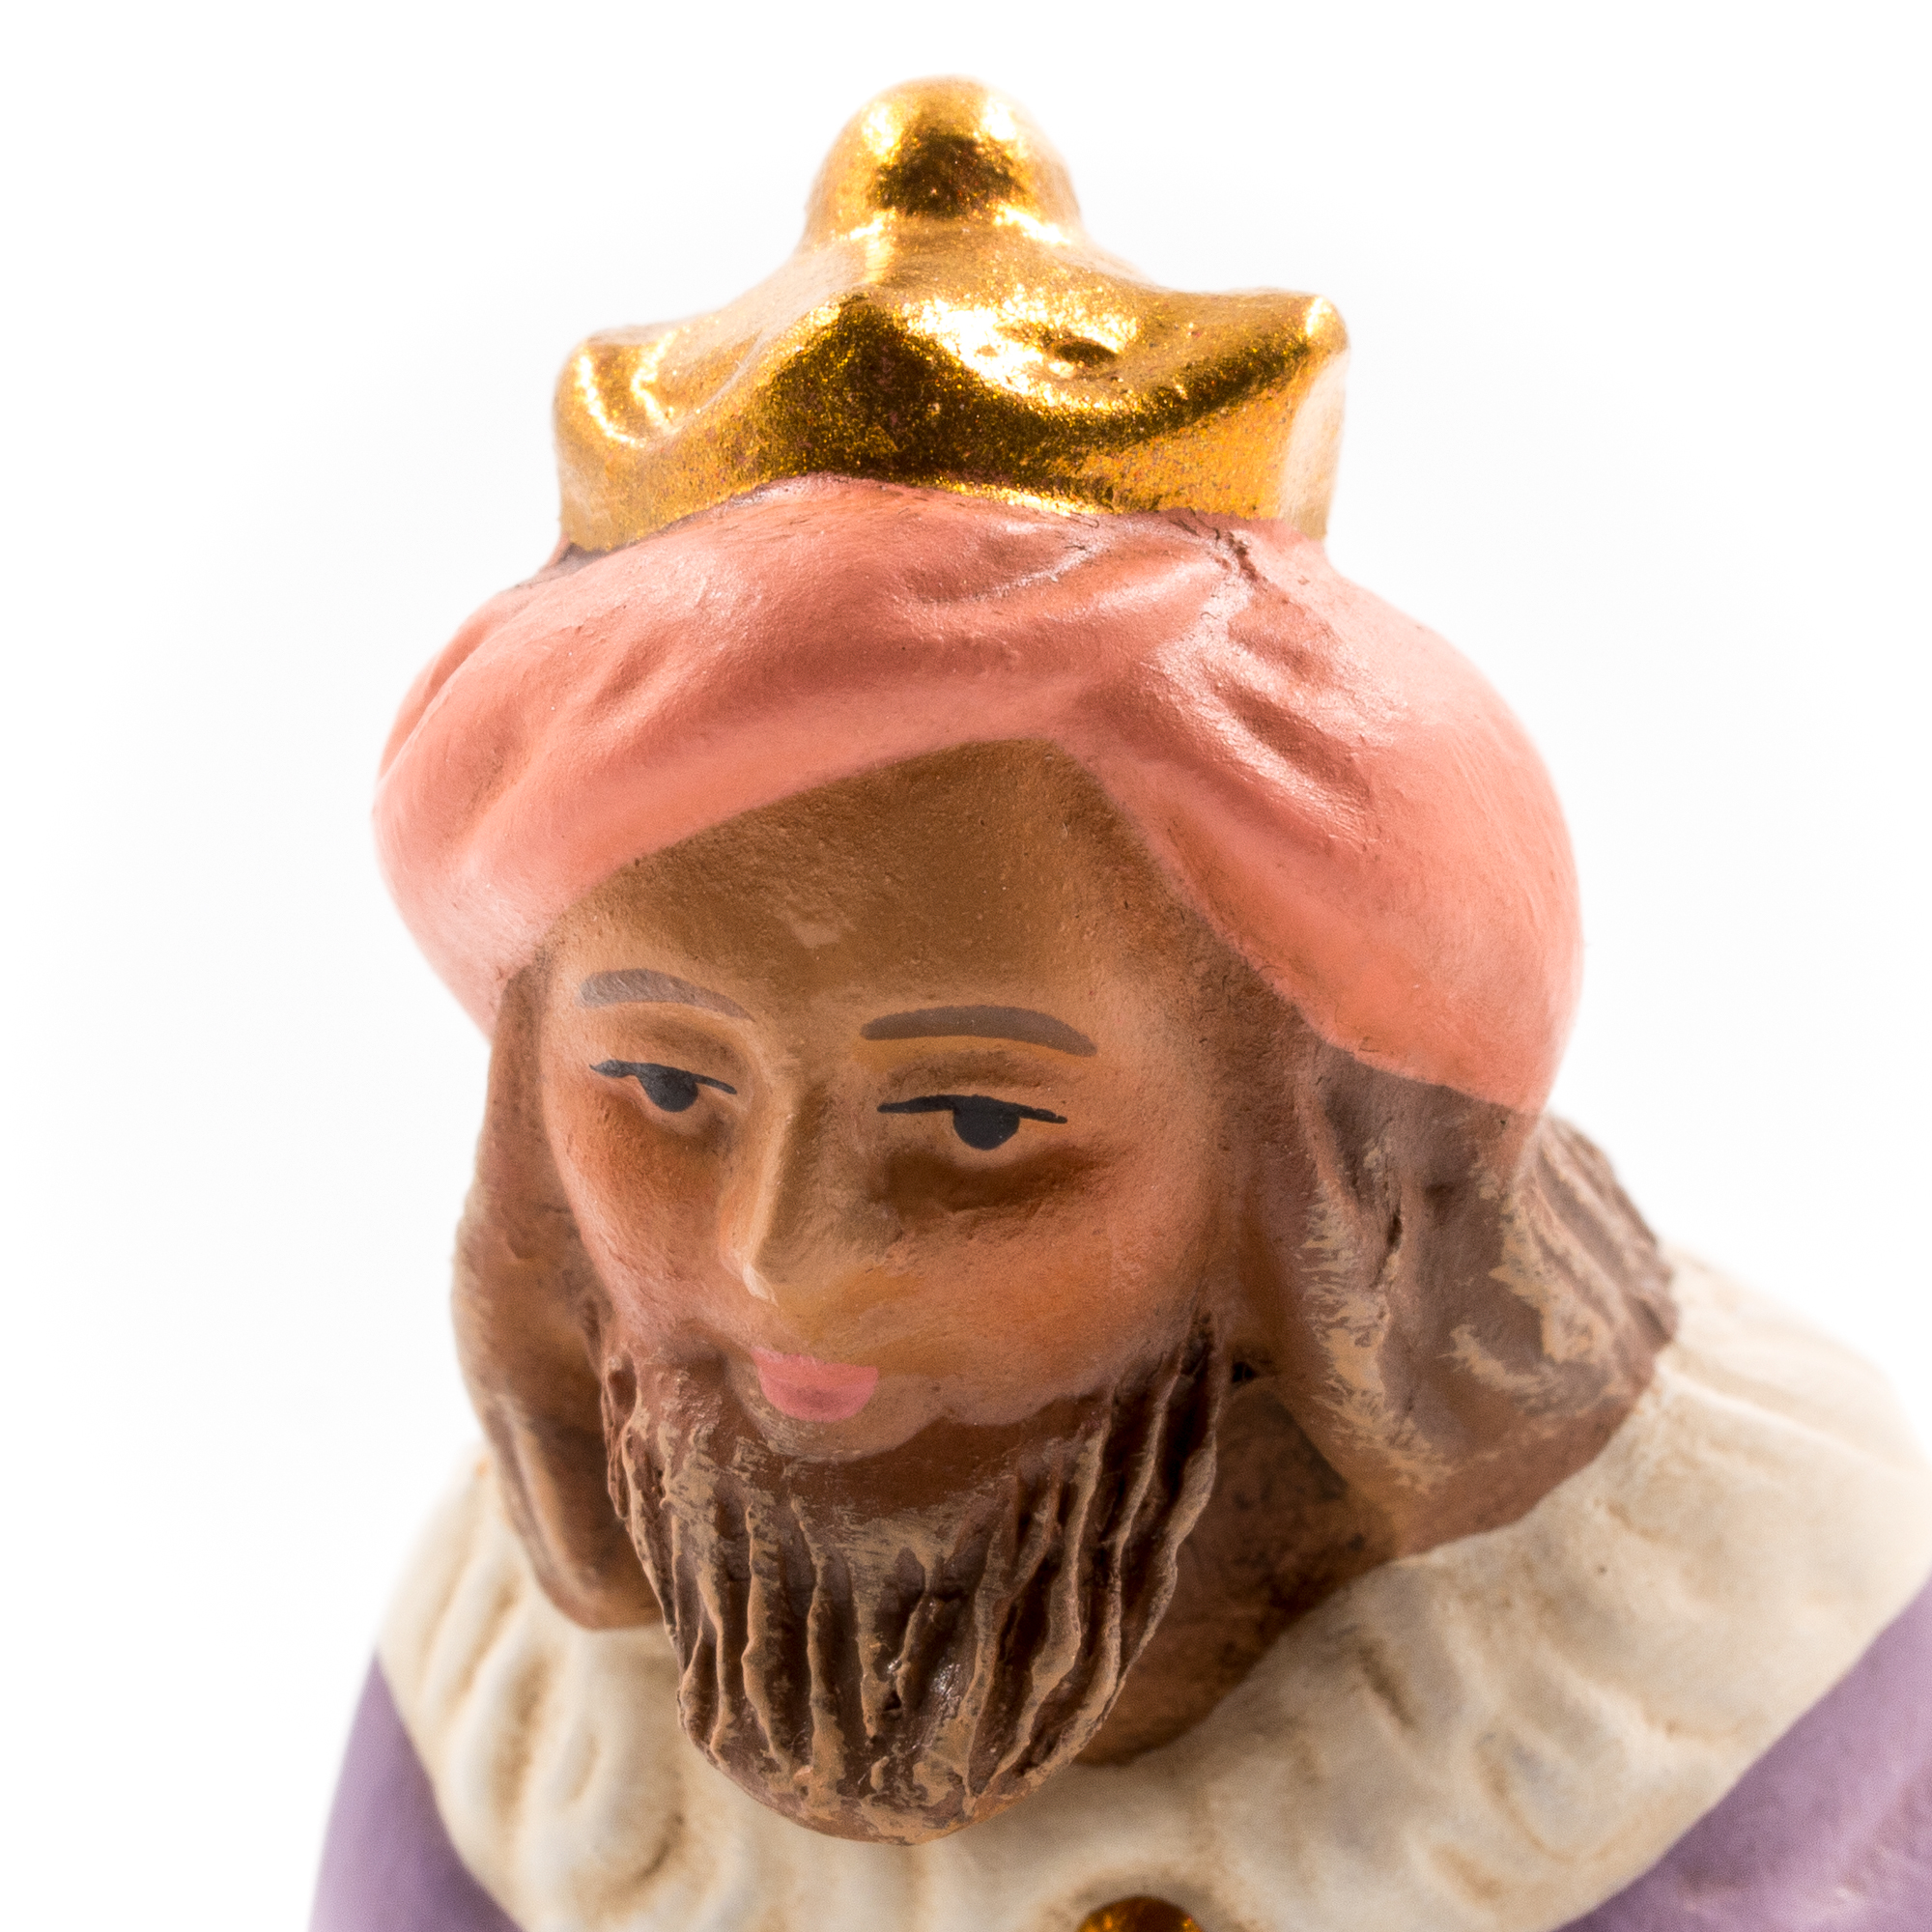 König braun (Melchior) - MAROLIN Krippenfigur